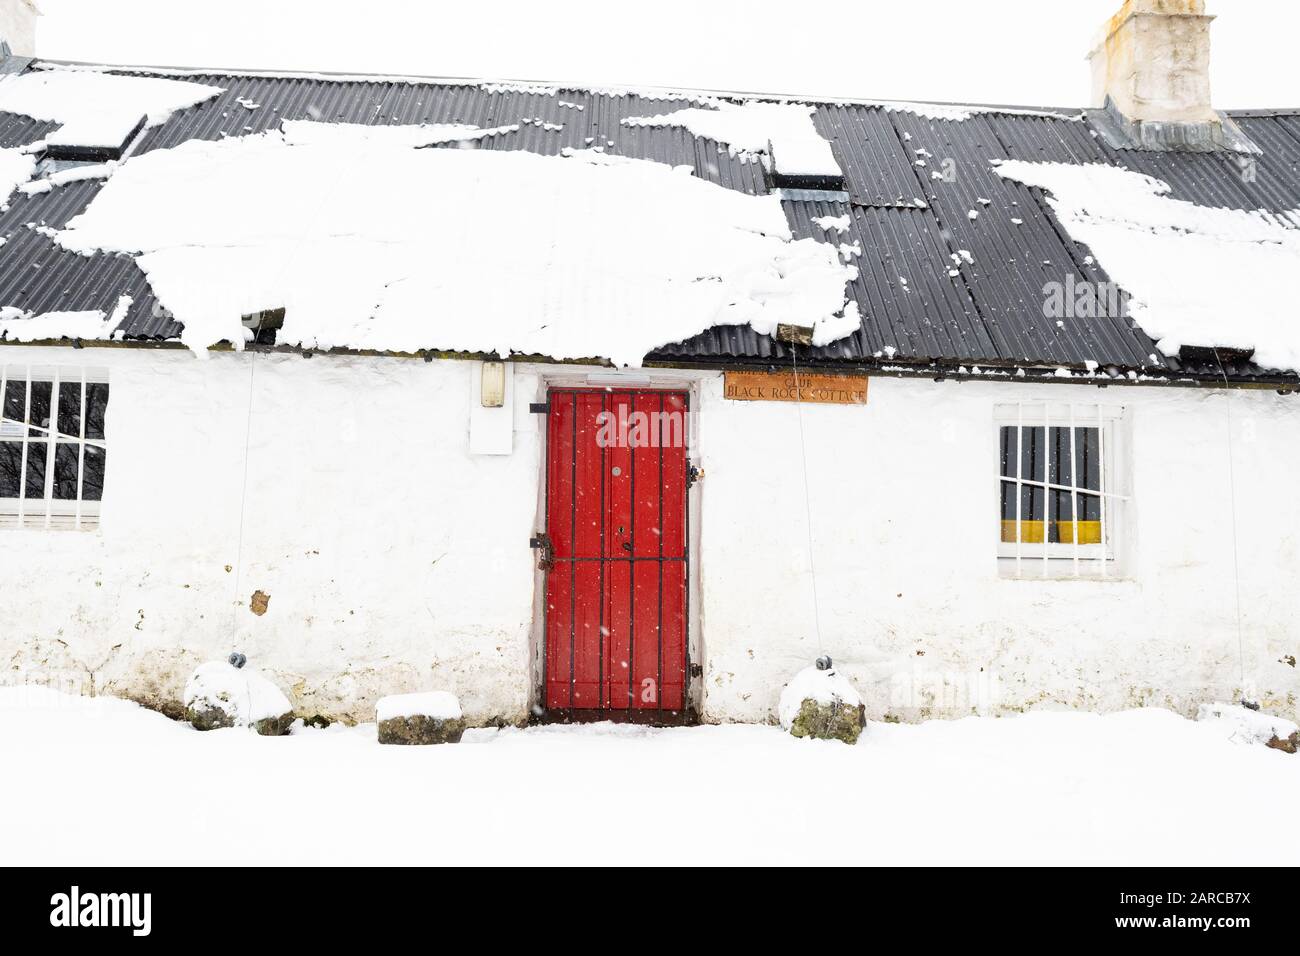 Glen Coe, Scozia, Regno Unito. 27th Gen 2020. Tempo nel Regno Unito - una coperta fresca di neve è stata veloce per scivolare fuori dal tetto dell'iconico Black Rock Cottage a Glen Coe, Scotland Credit: Kay Roxby/Alamy Live News Foto Stock